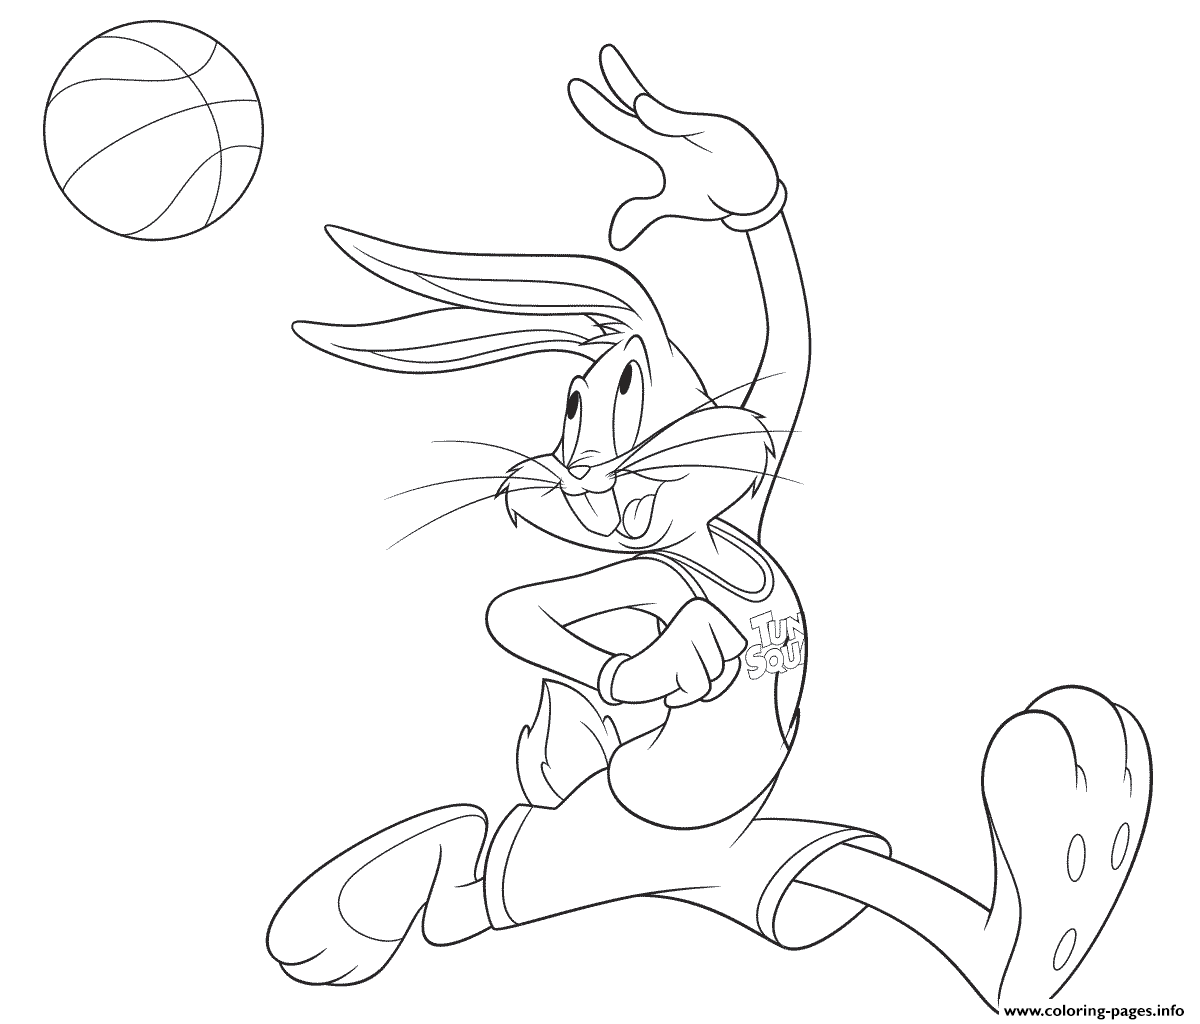 Bugs bunny basketball coloring page printable